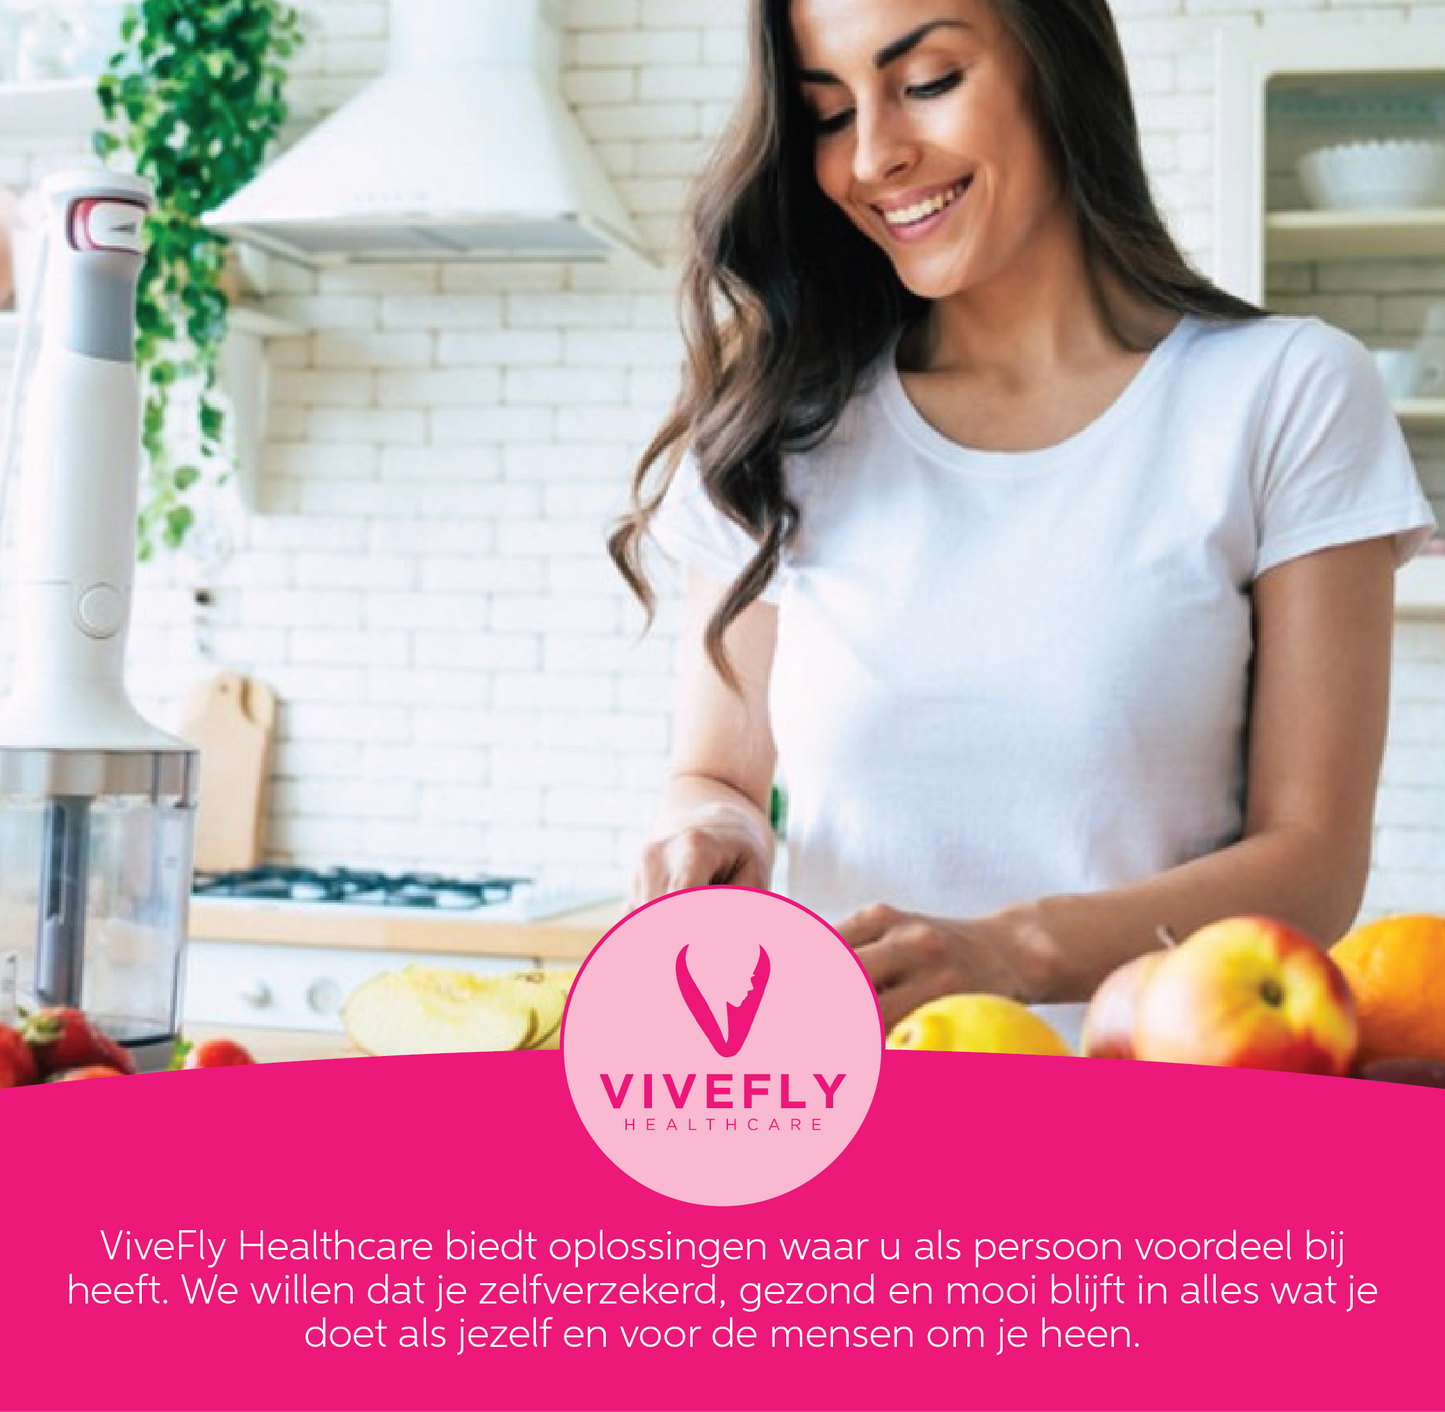 Vivefly Healthcare - Ketonenteststrips Nauwkeurige (100 stuks) voor Optimaal Keto dieet en Vetverbranding